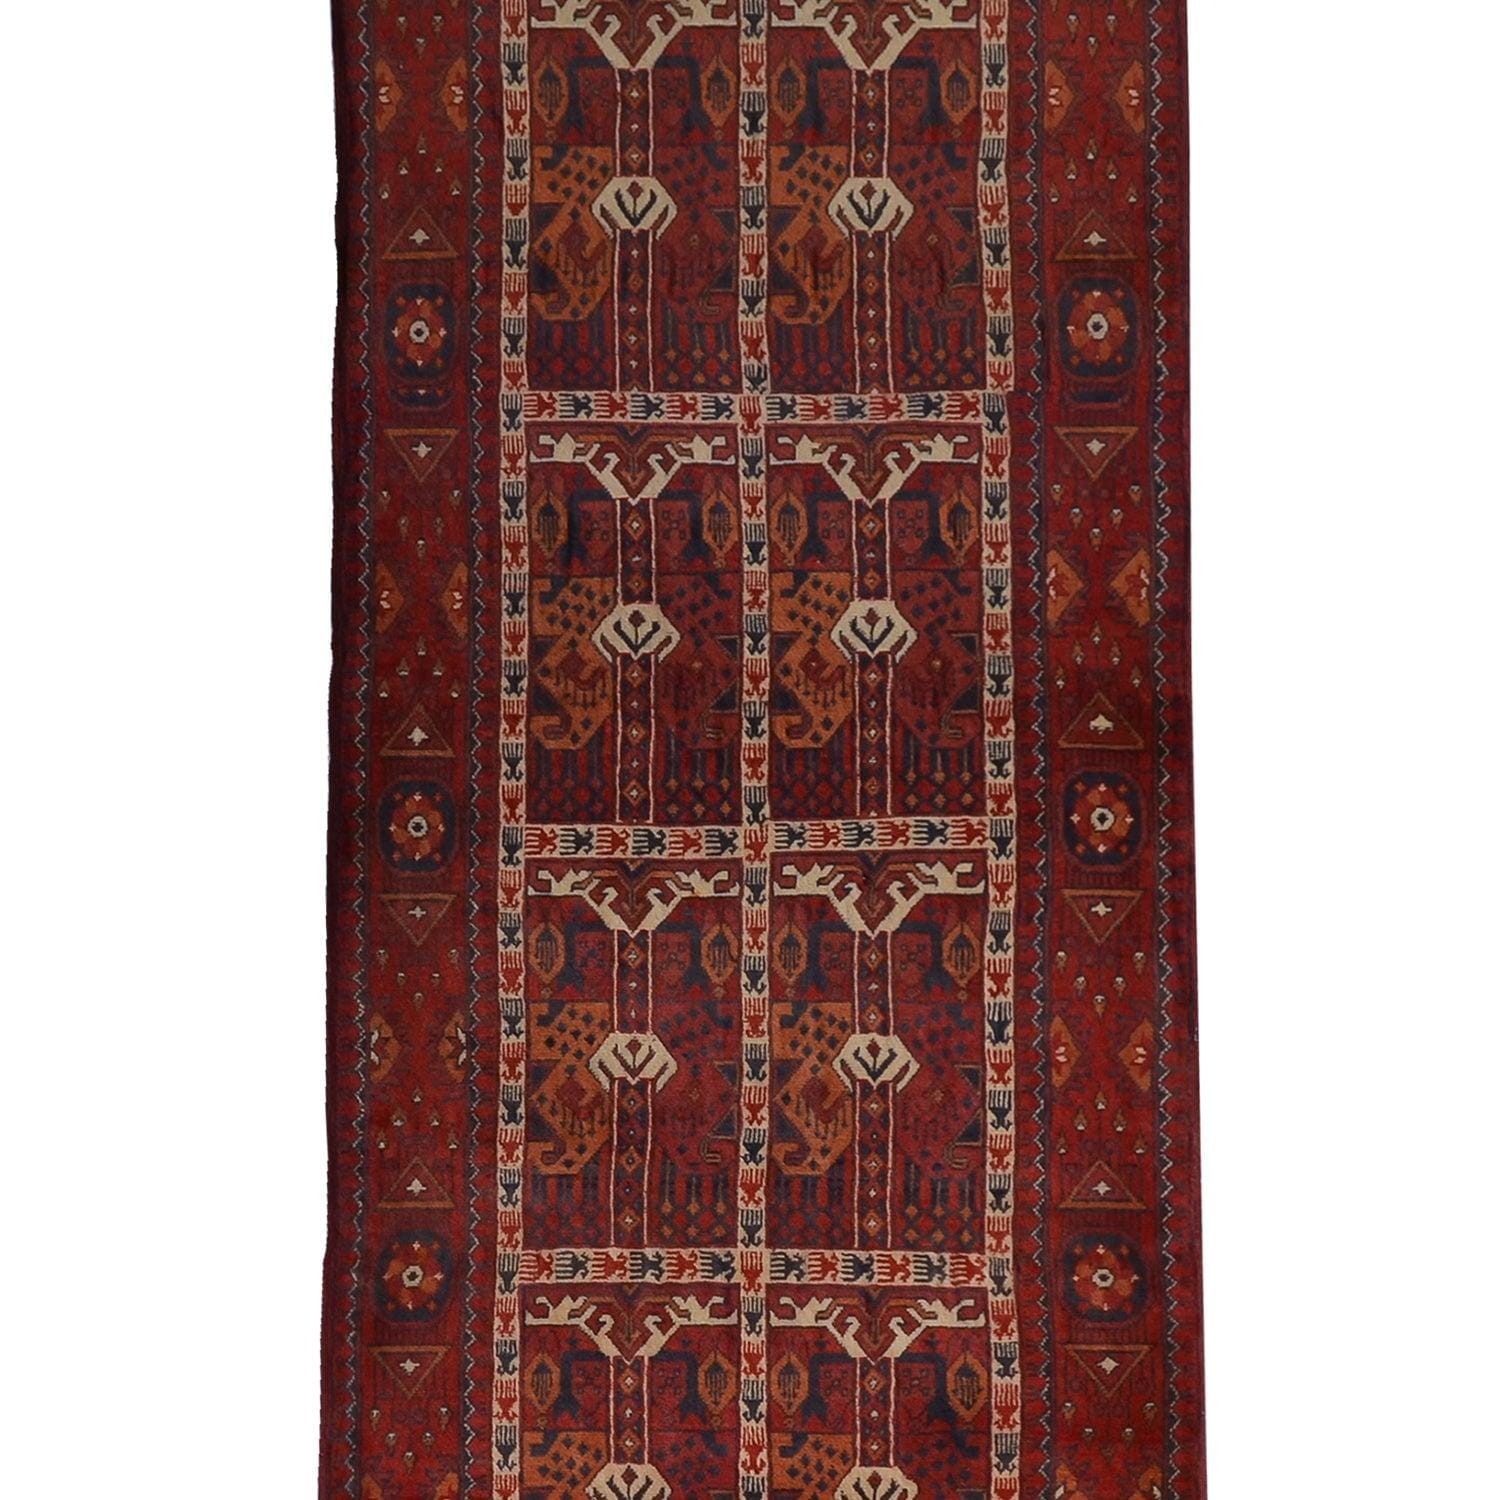 Handmade 100% Wool Vintage Turkmen Hallway Runner 78cm x 346cm